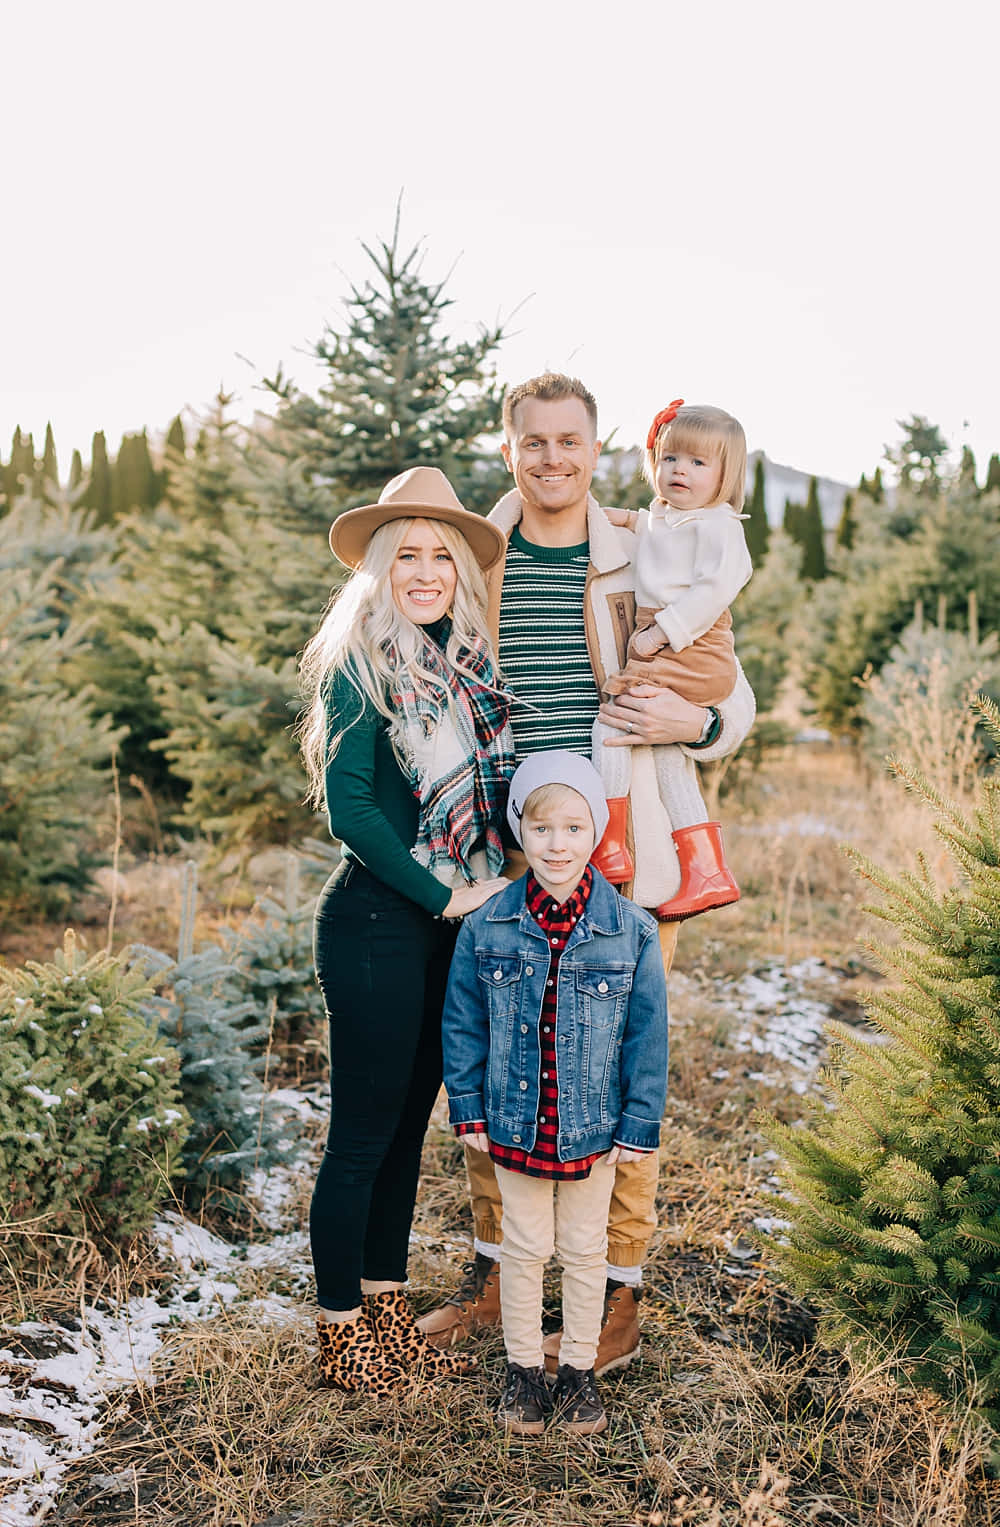 Familienbilderauf Dem Weihnachtsbaum-bauernhof